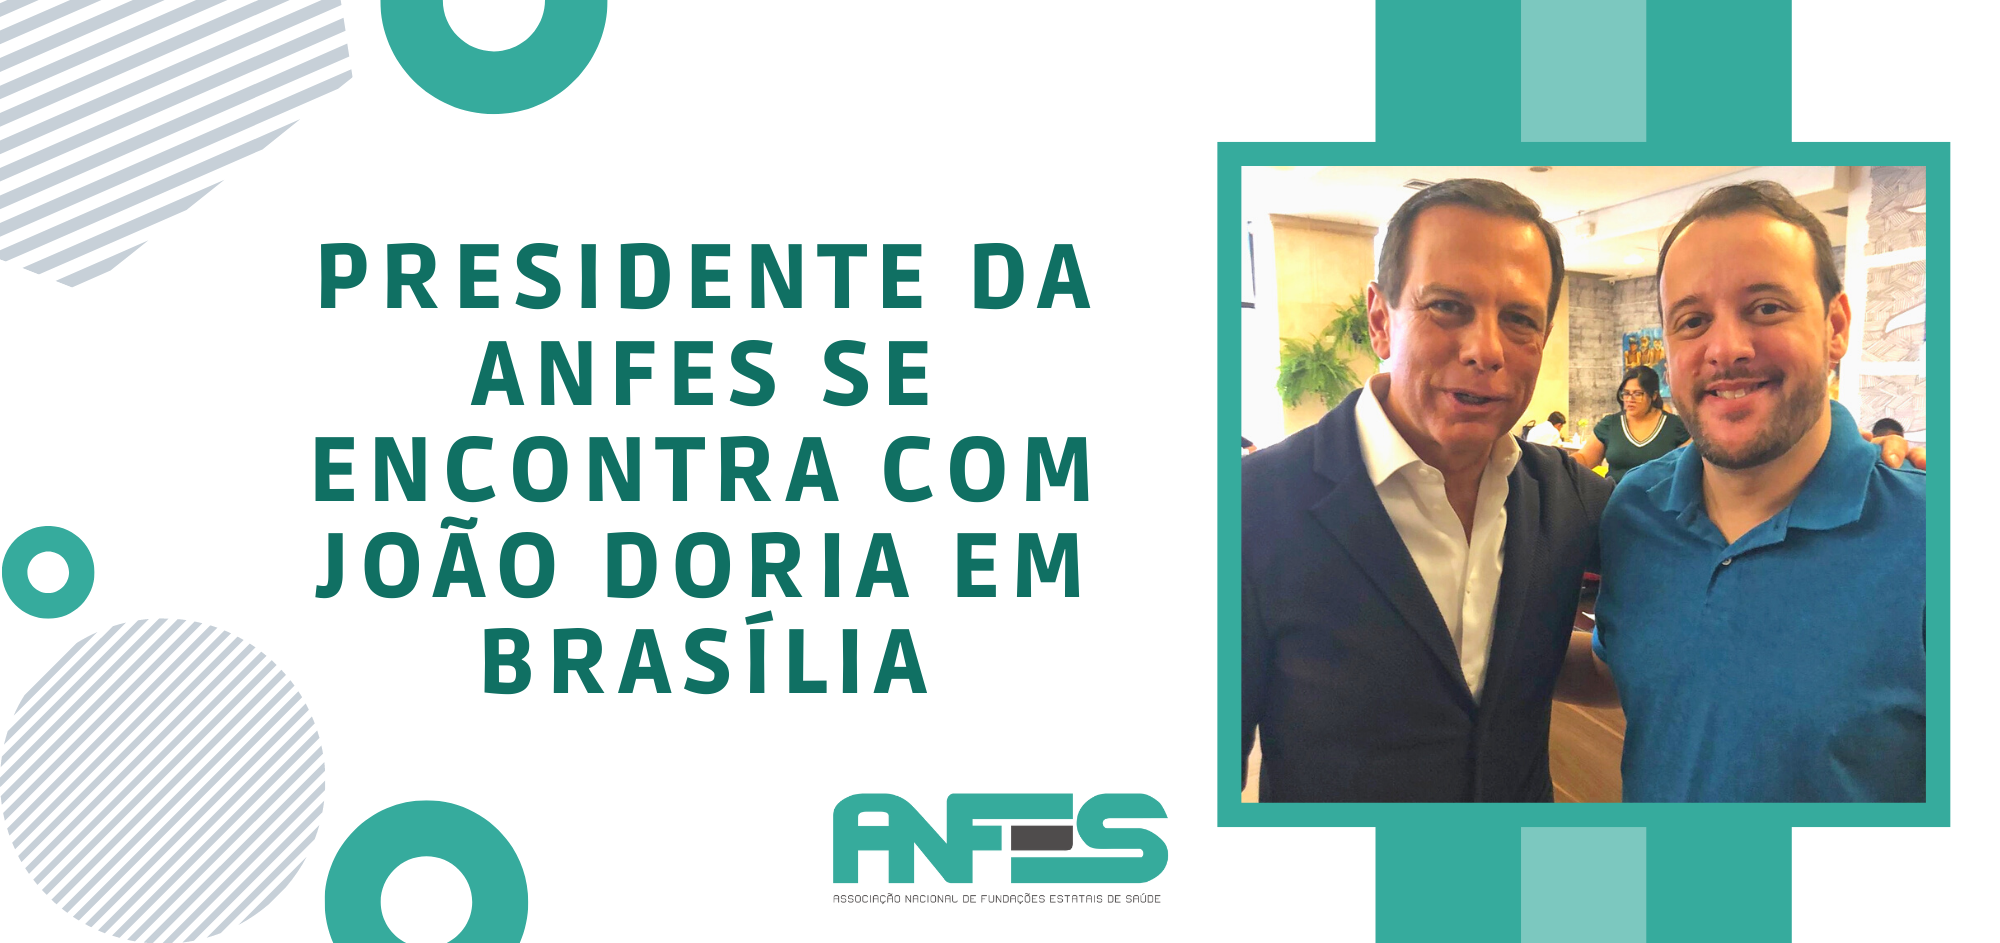 Presidente da ANFES se encontra com João Doria em Brasília